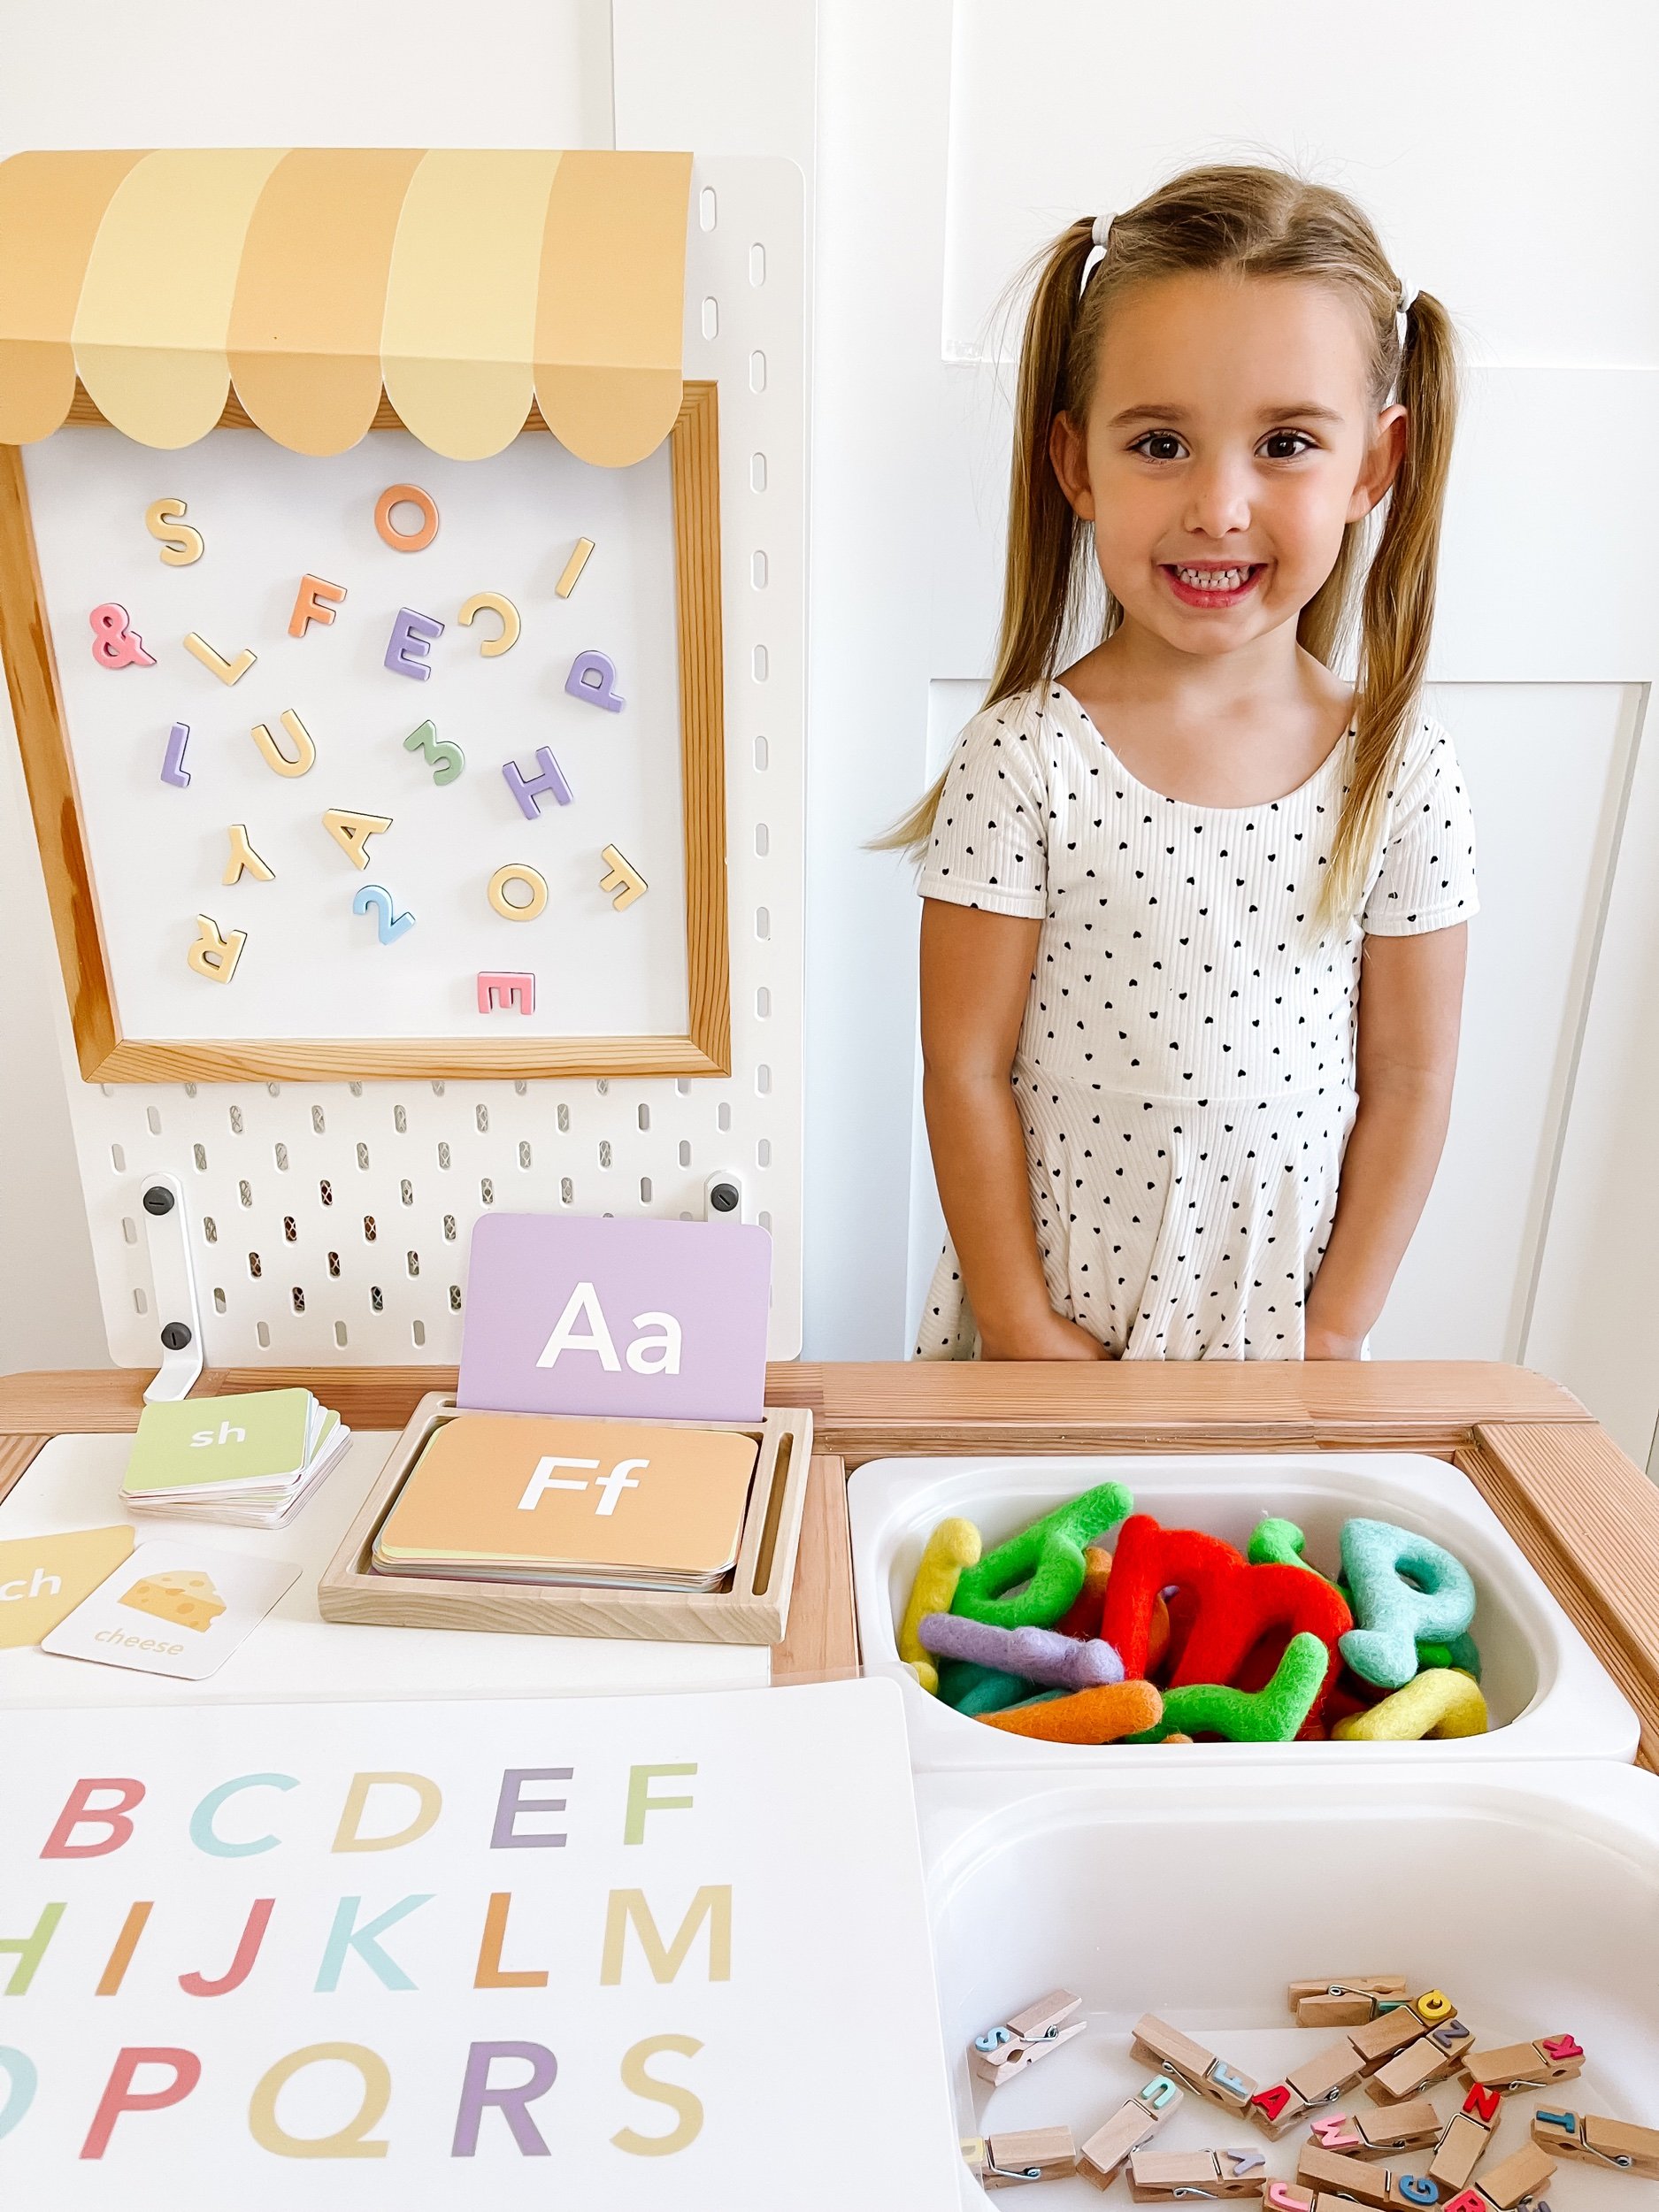 Toddler girl learning alphabet letter sounds